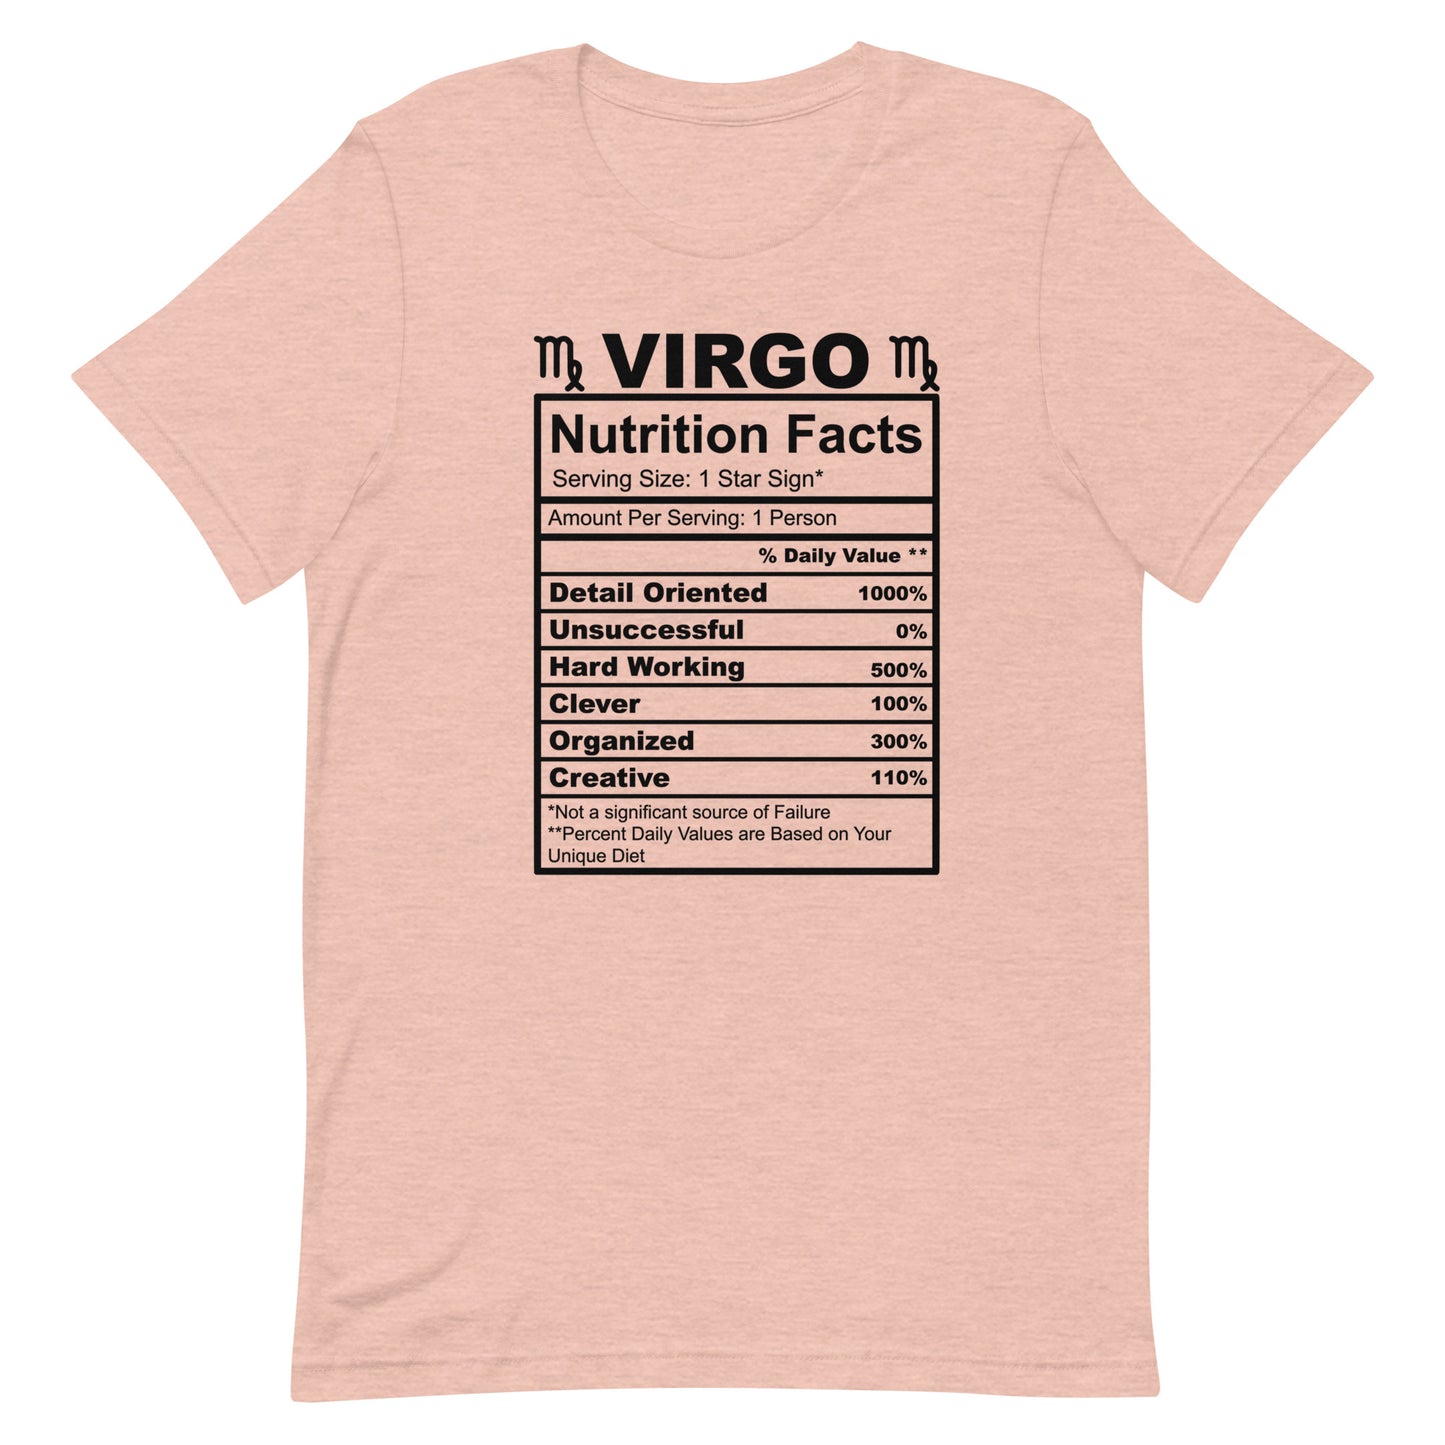 VIRGO - L-XL - Unisex T-Shirt (black letters)